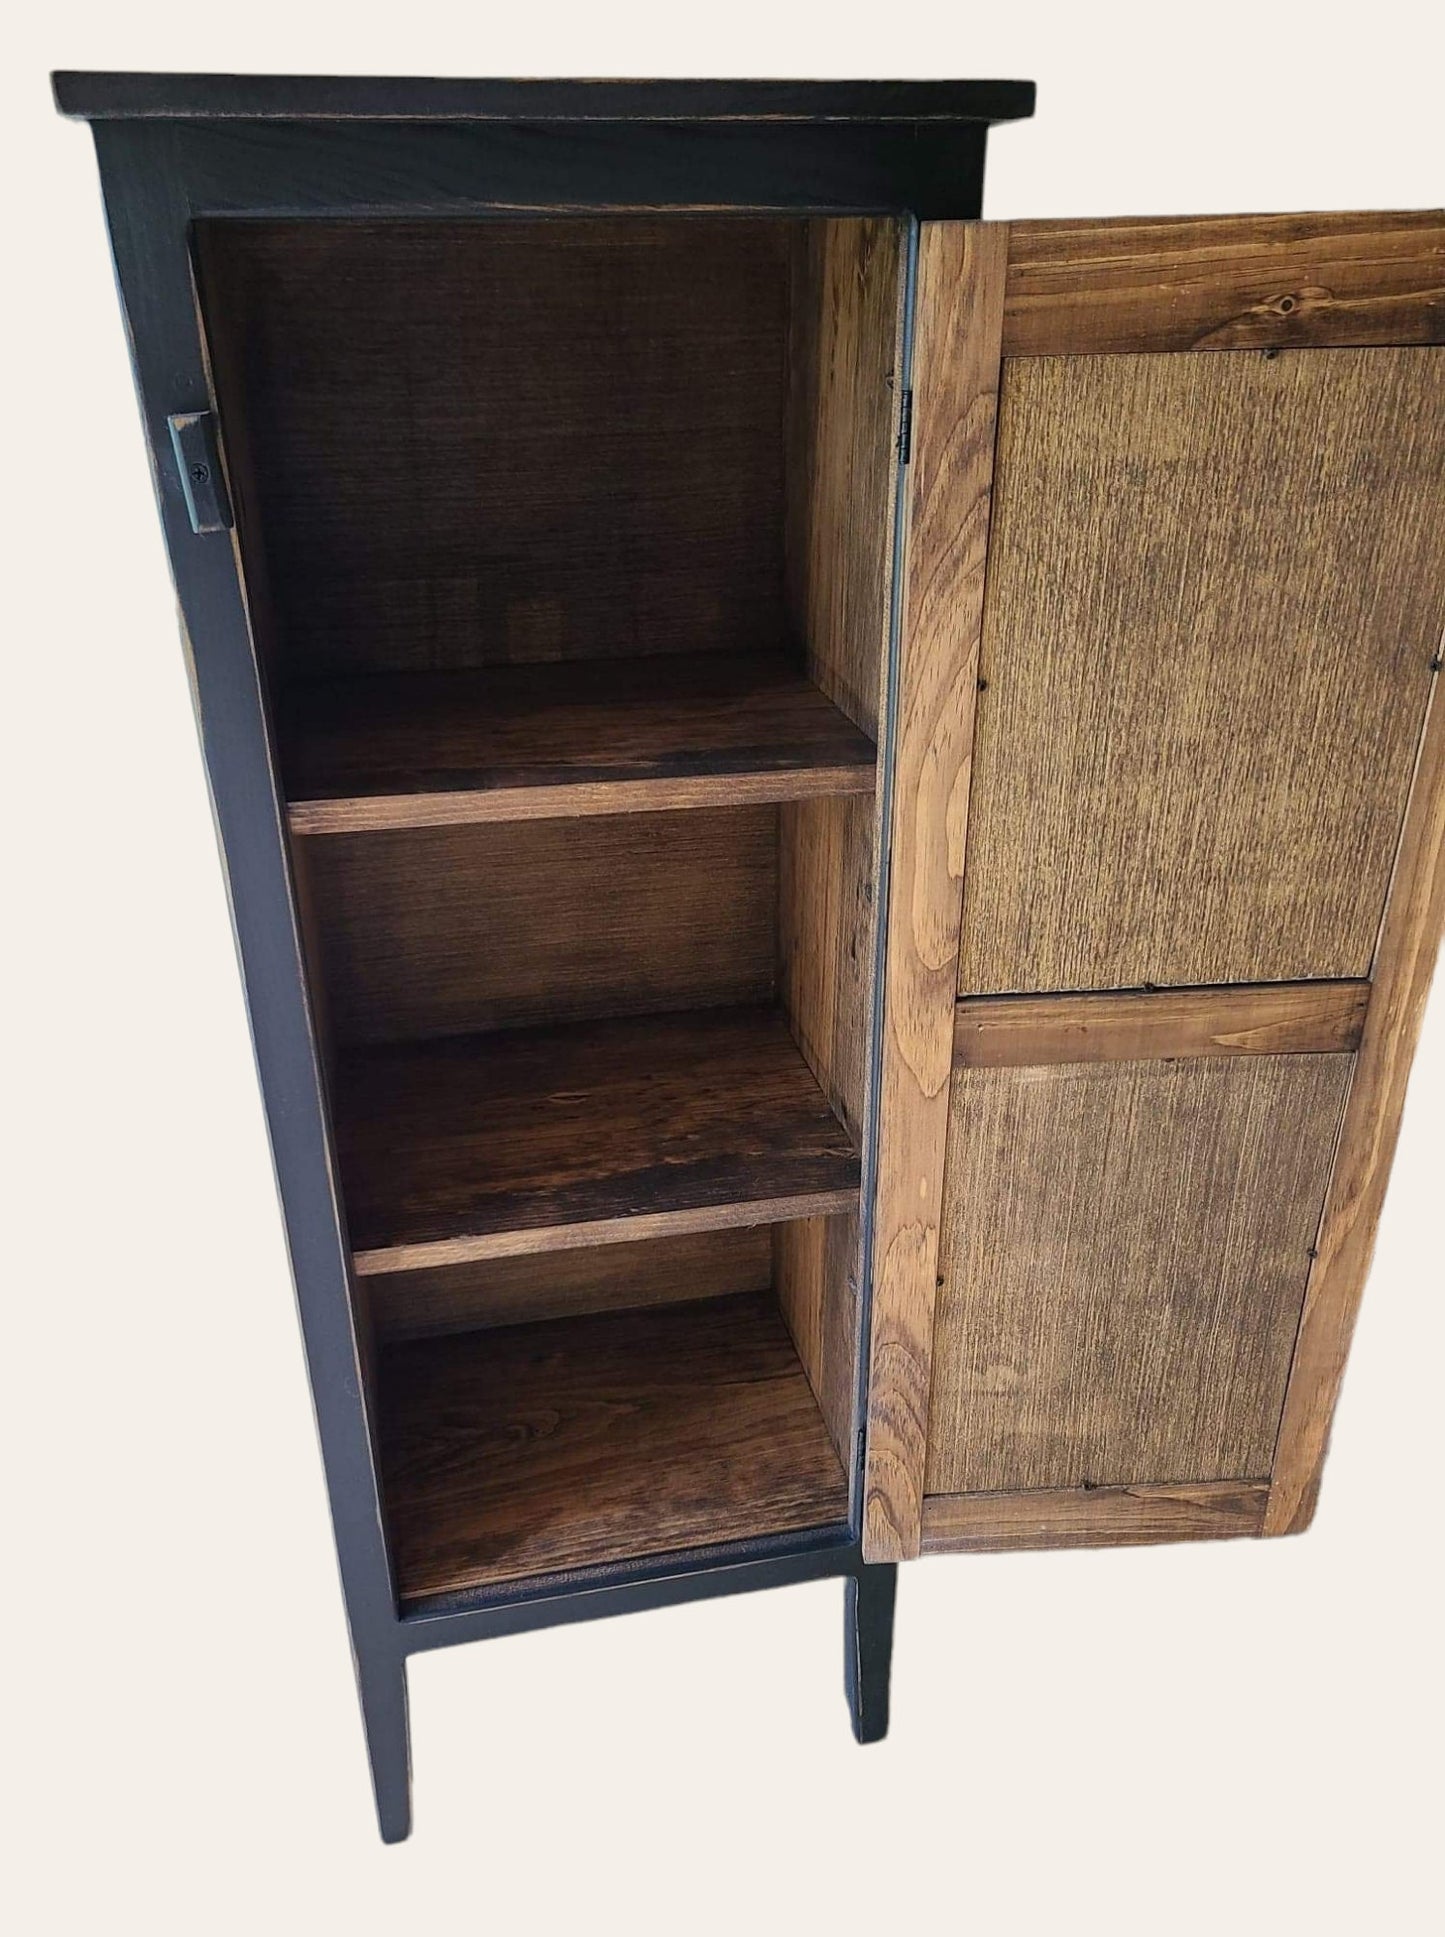 Rustic pie safe cabinet / cupboard / Farmhouse style furniture